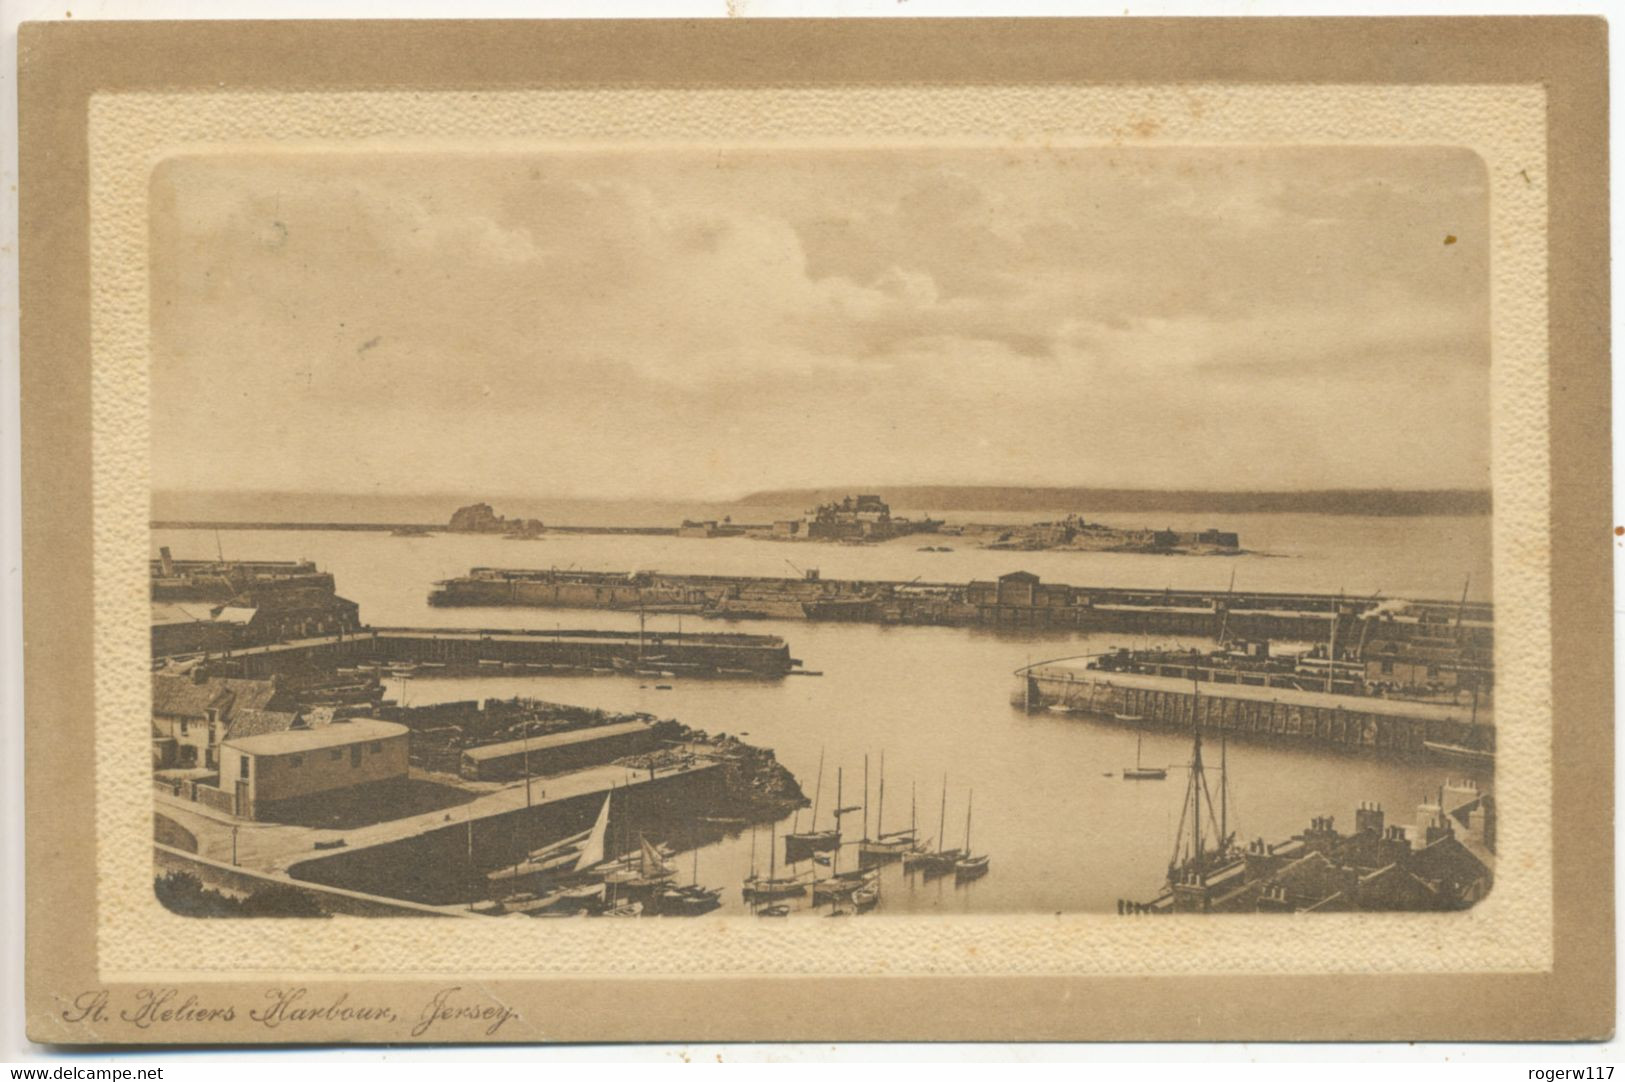 St. Helier's Harbour, Jersey, 1912 Postcard - St. Helier